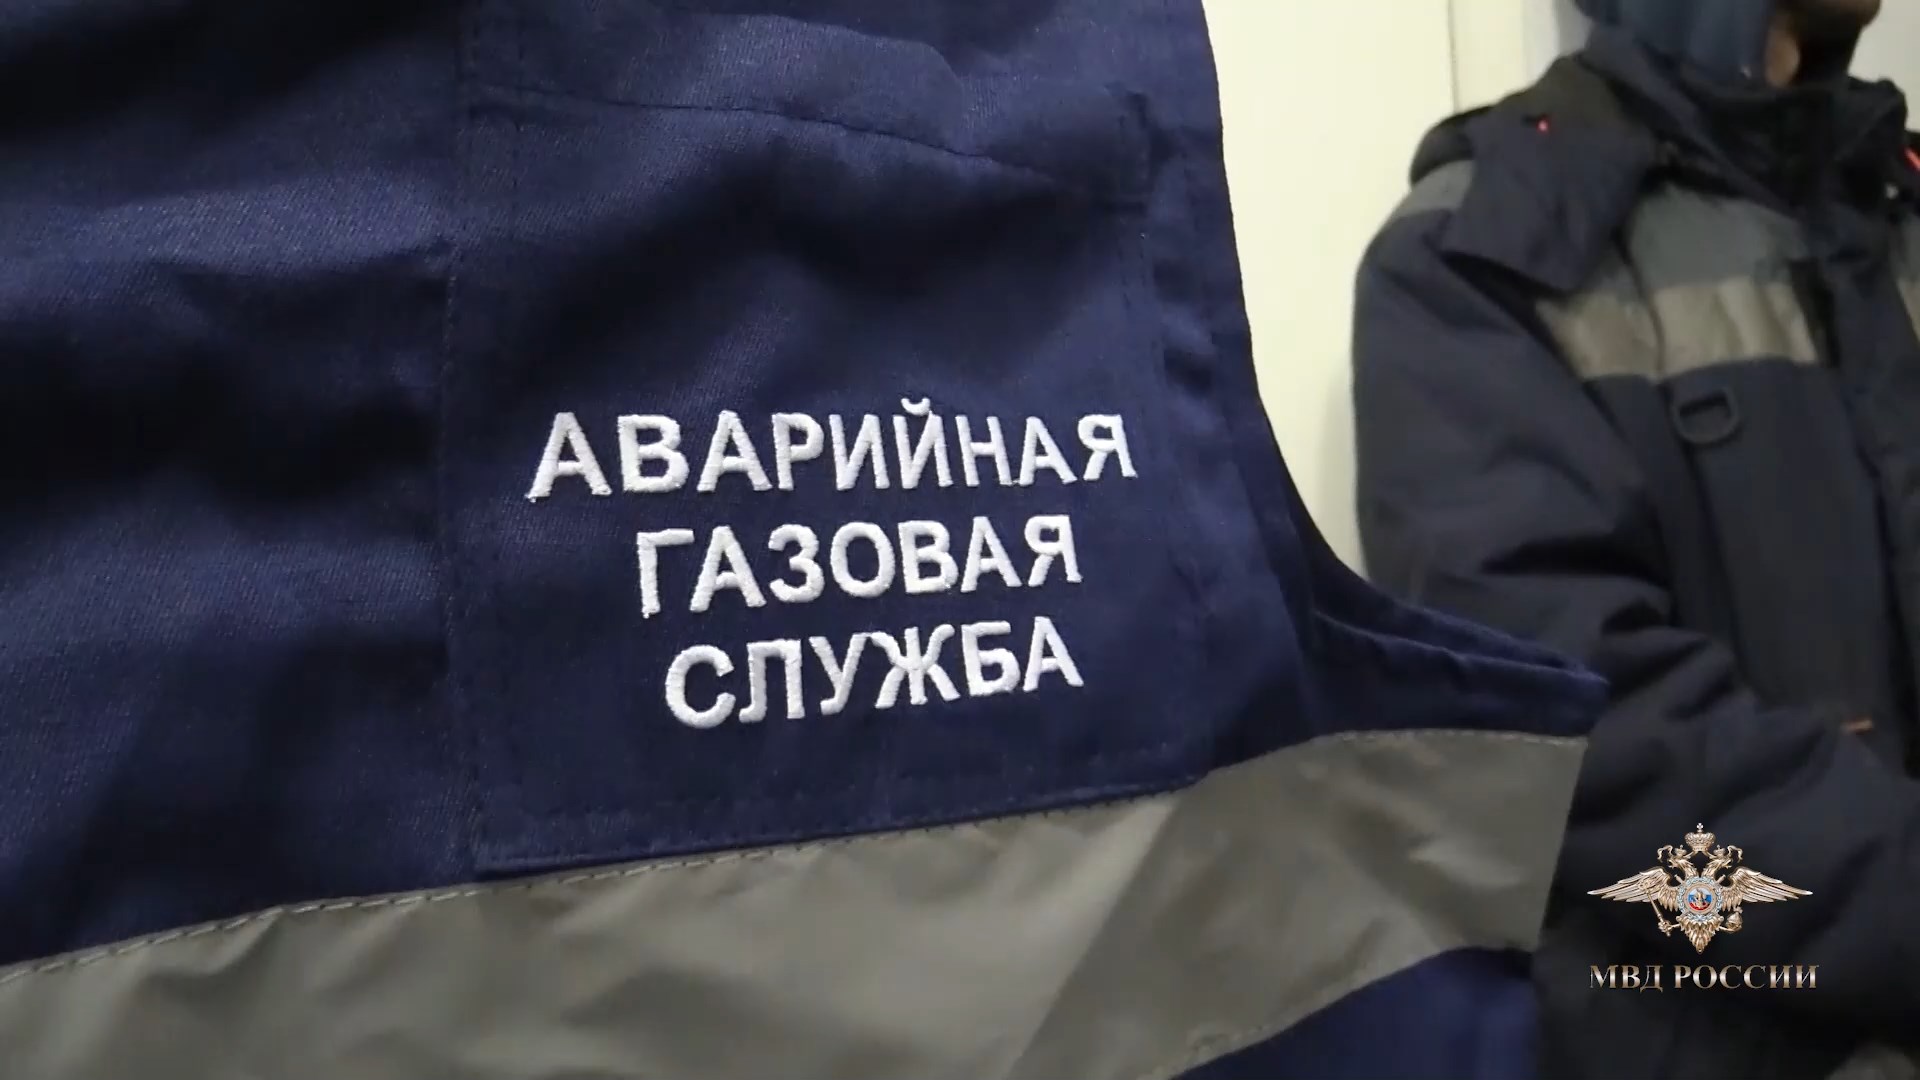 В Волгограде задержали десятерых лжегазовщиков